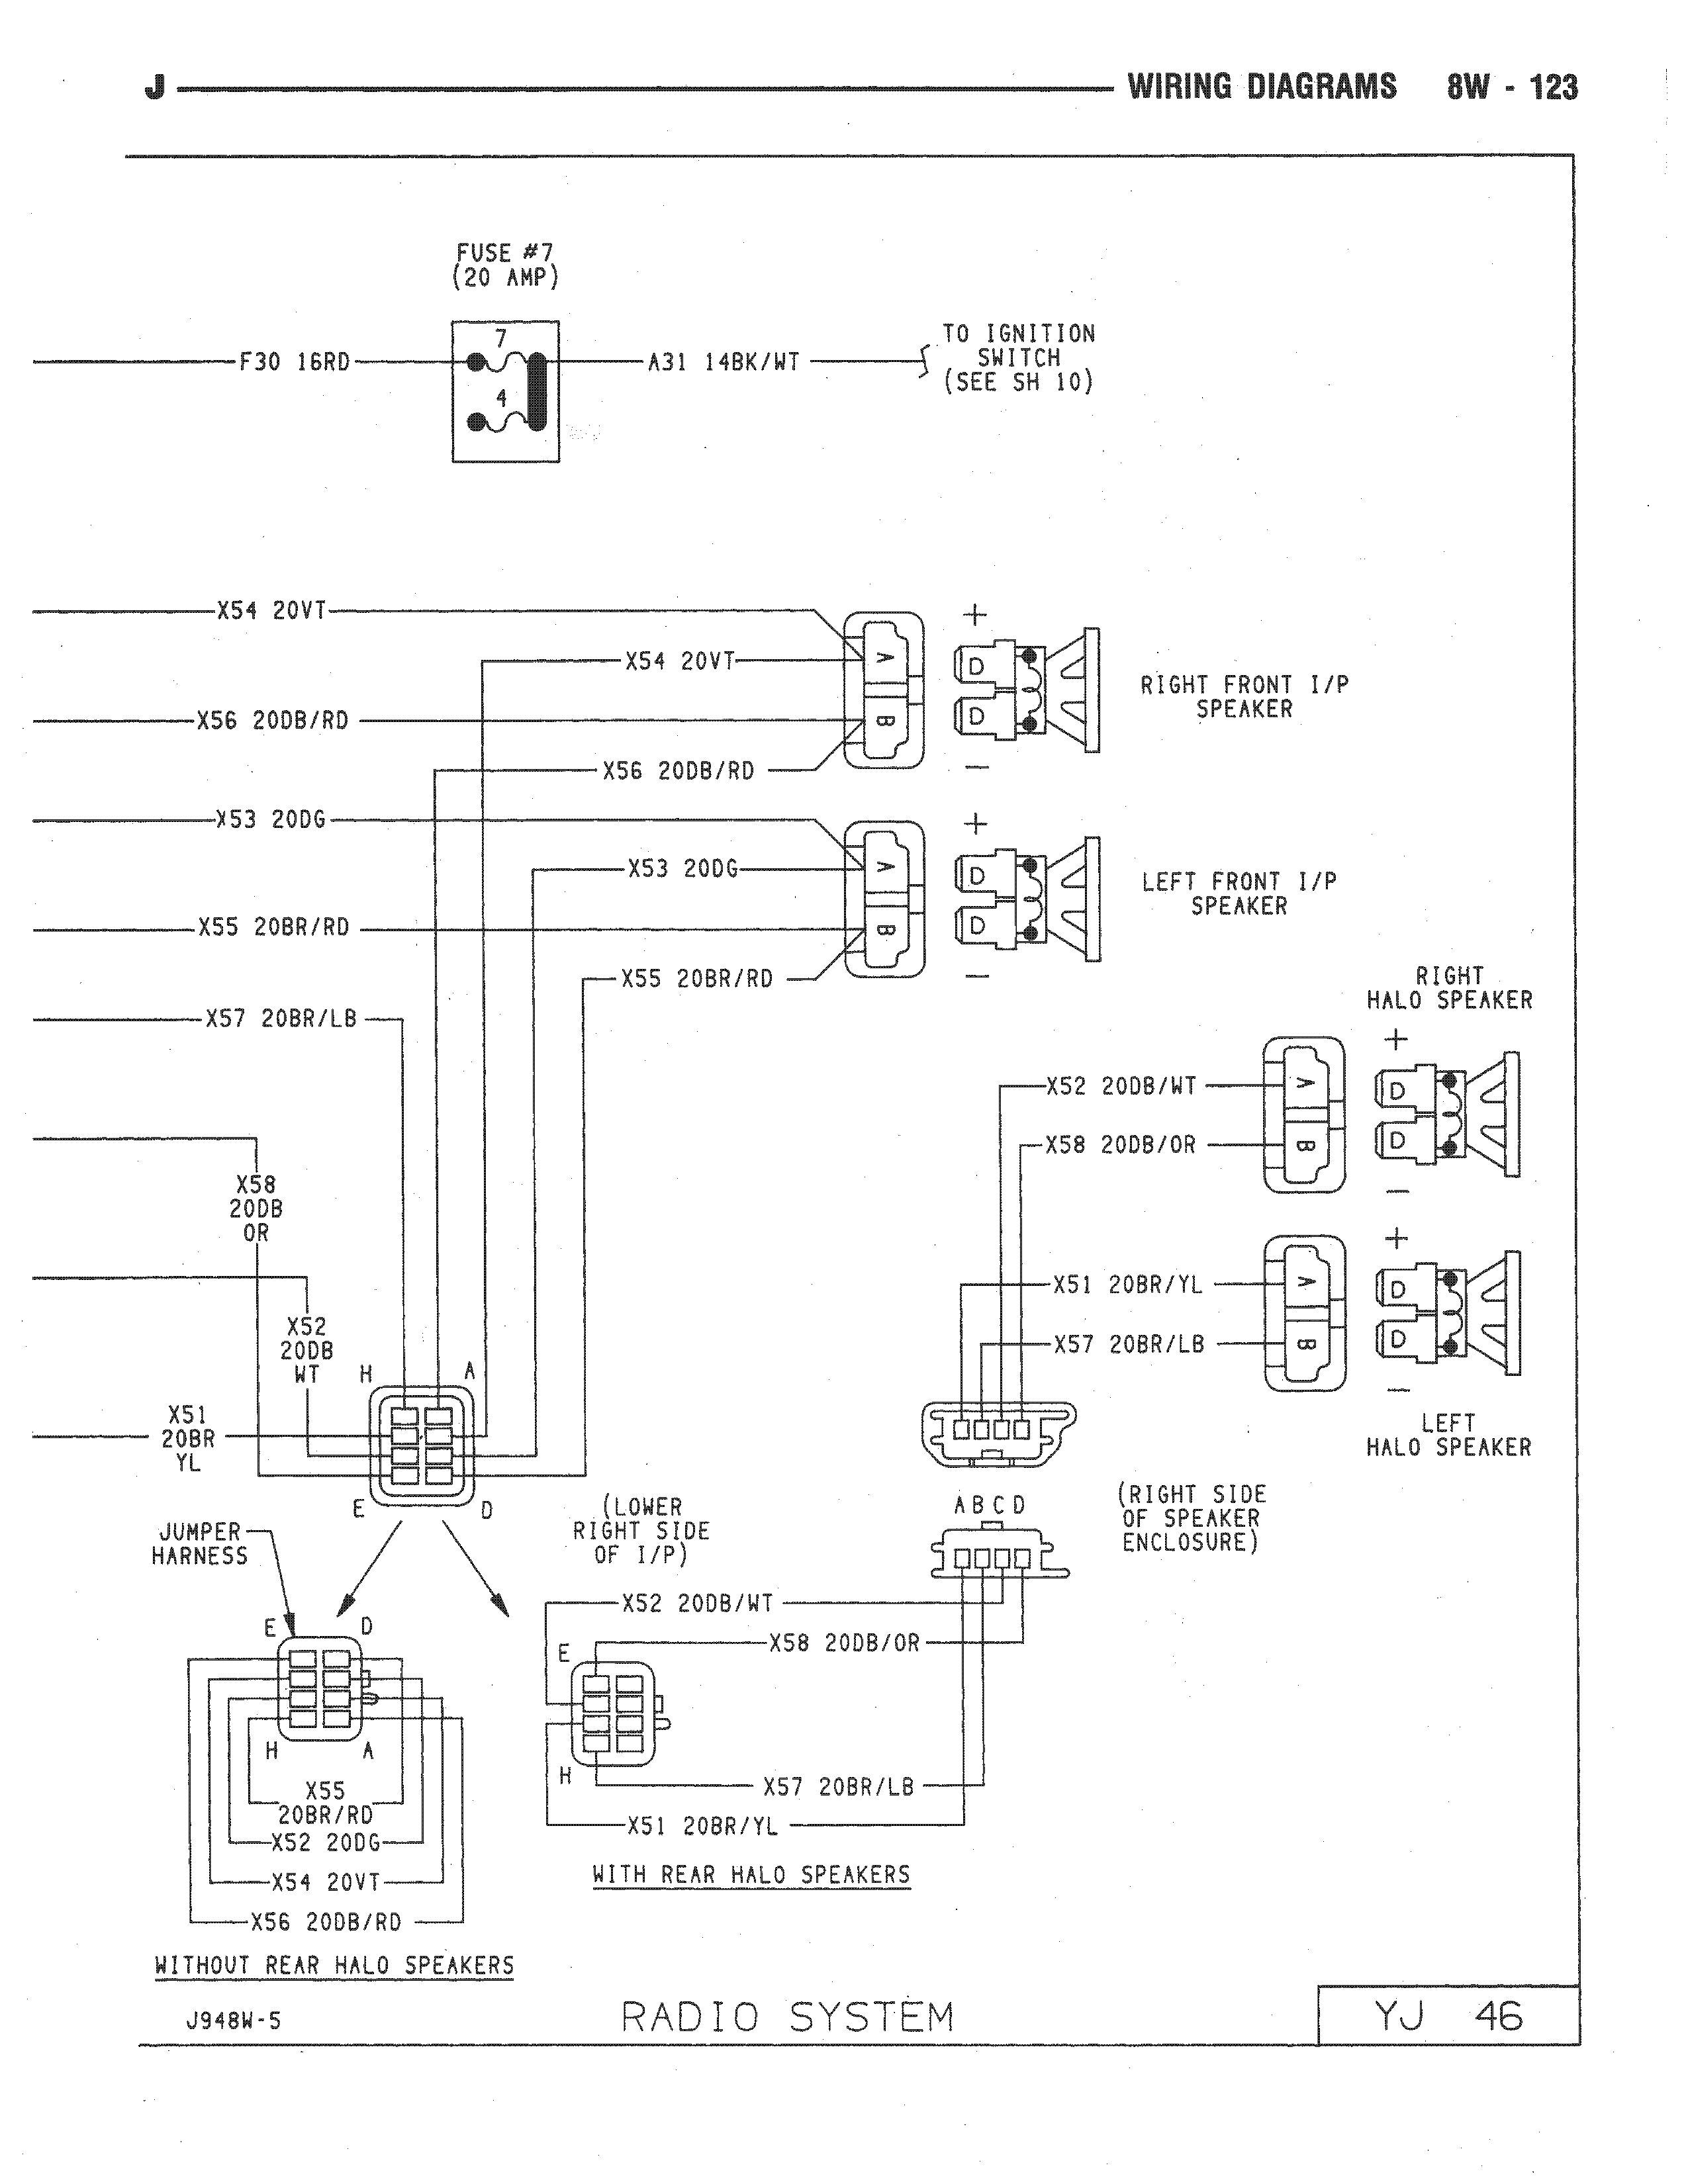 haynes wiring diagrams unique simple haynes manual wiring diagram symbols joescablecar jpg